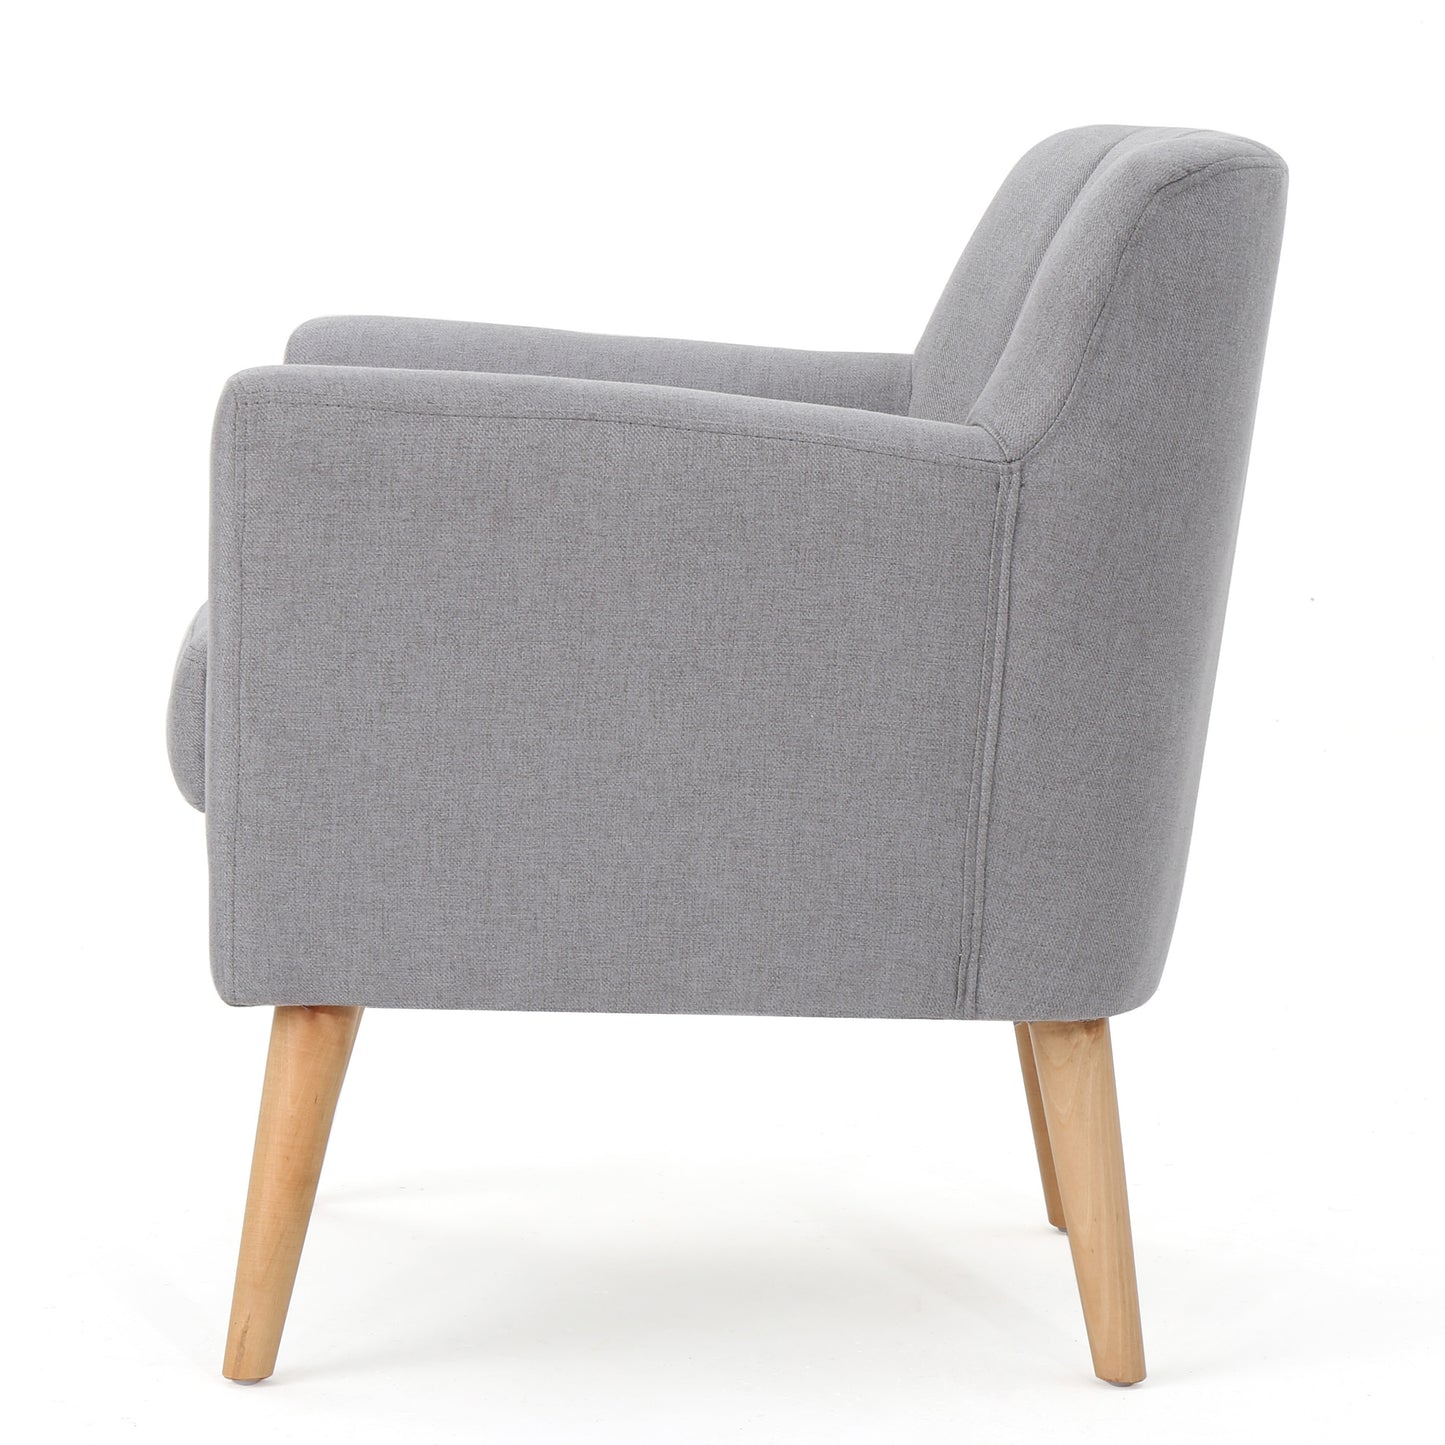 Madelyn Mid Century Modern Fabric Club Chair